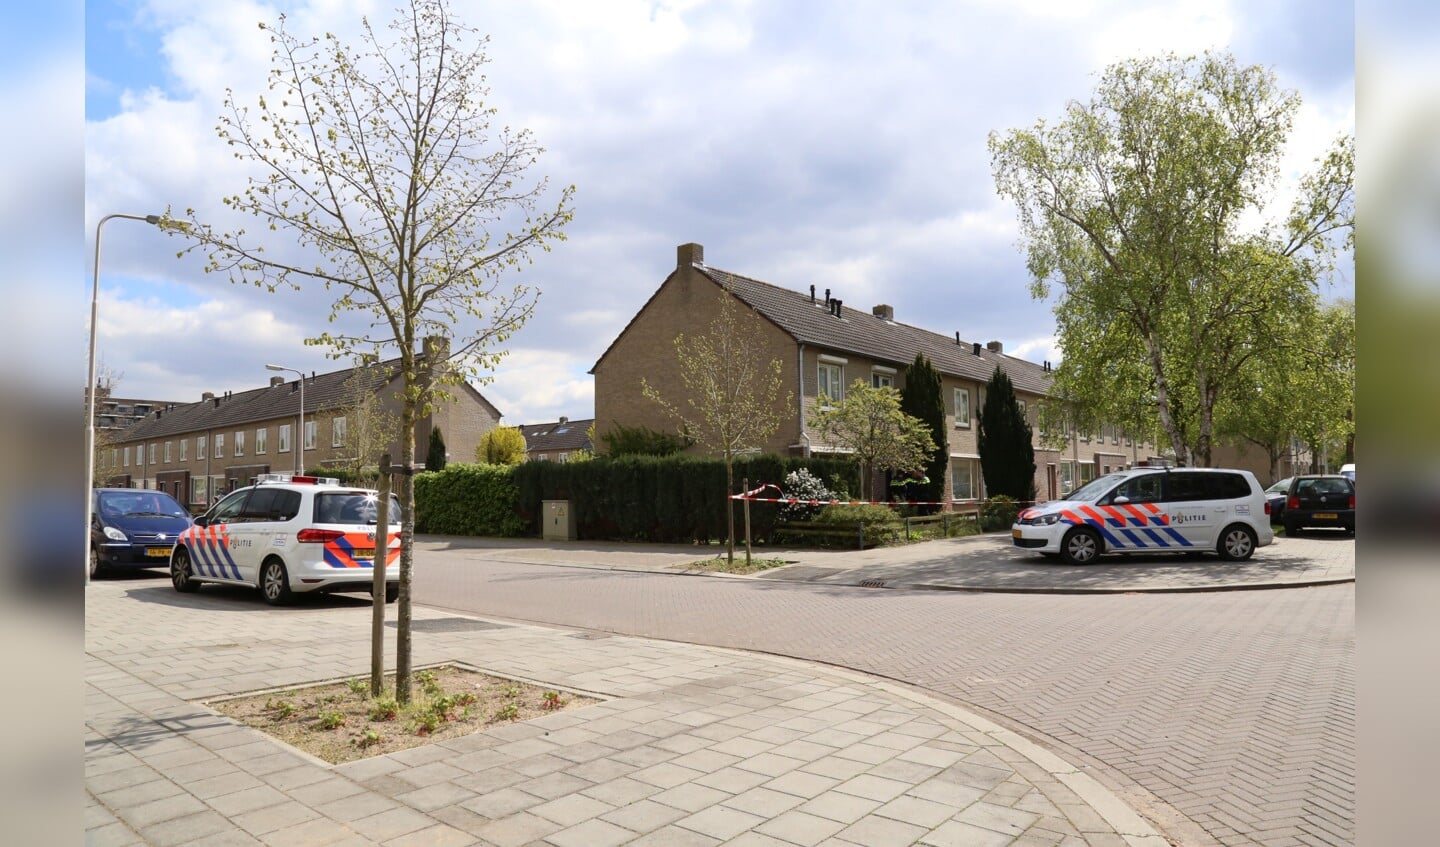 Politie bij de woning in de Van der Nootstraat. (Foto: Maickel Keijzers / Hendriks Multimedia)